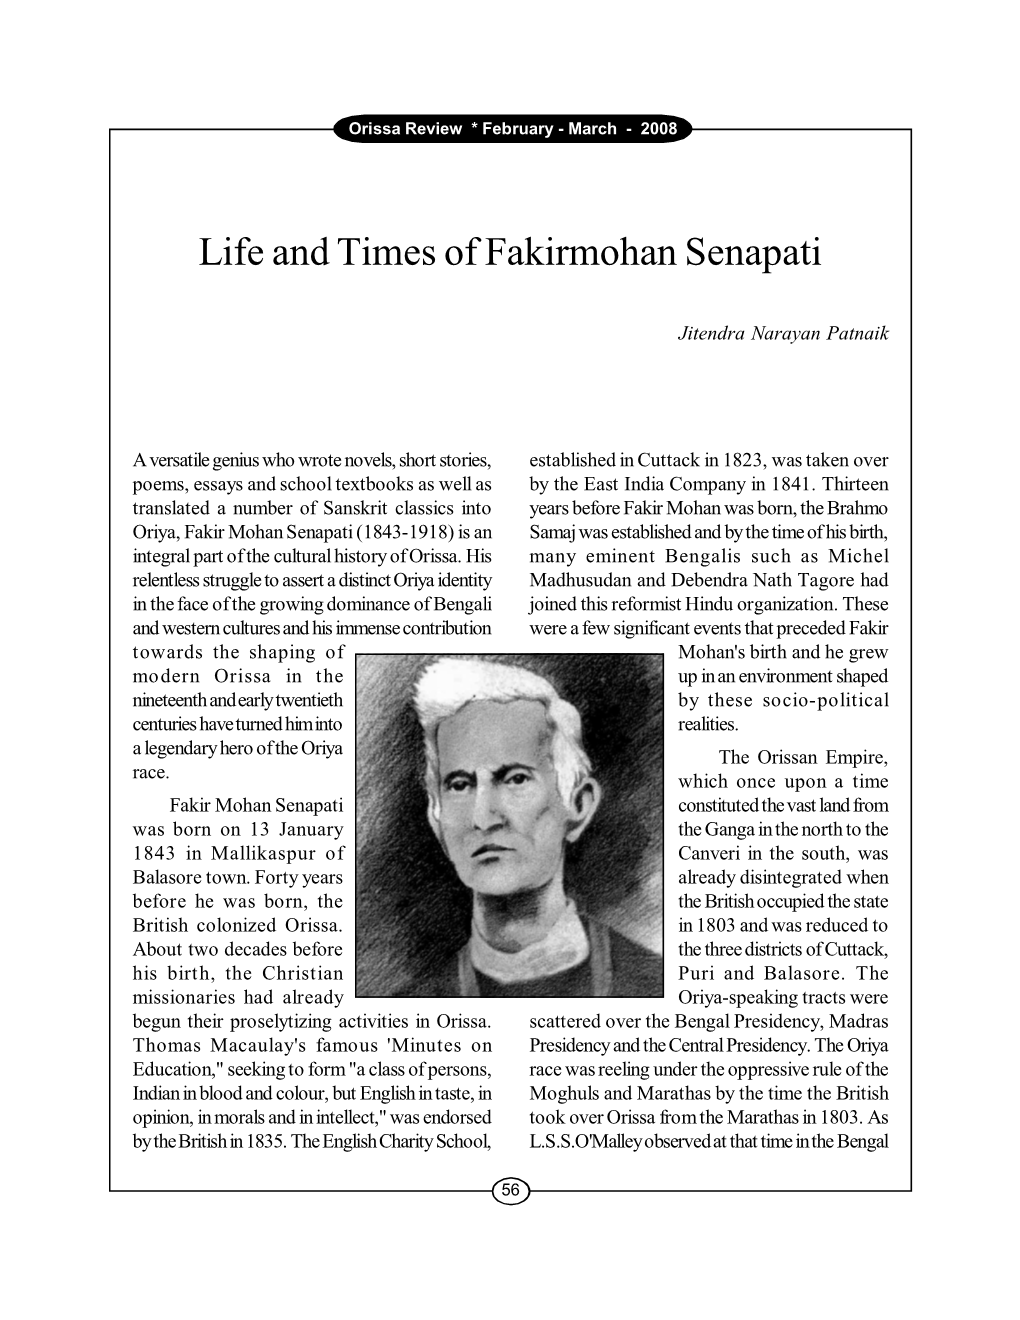 Life and Times of Fakirmohan Senapati